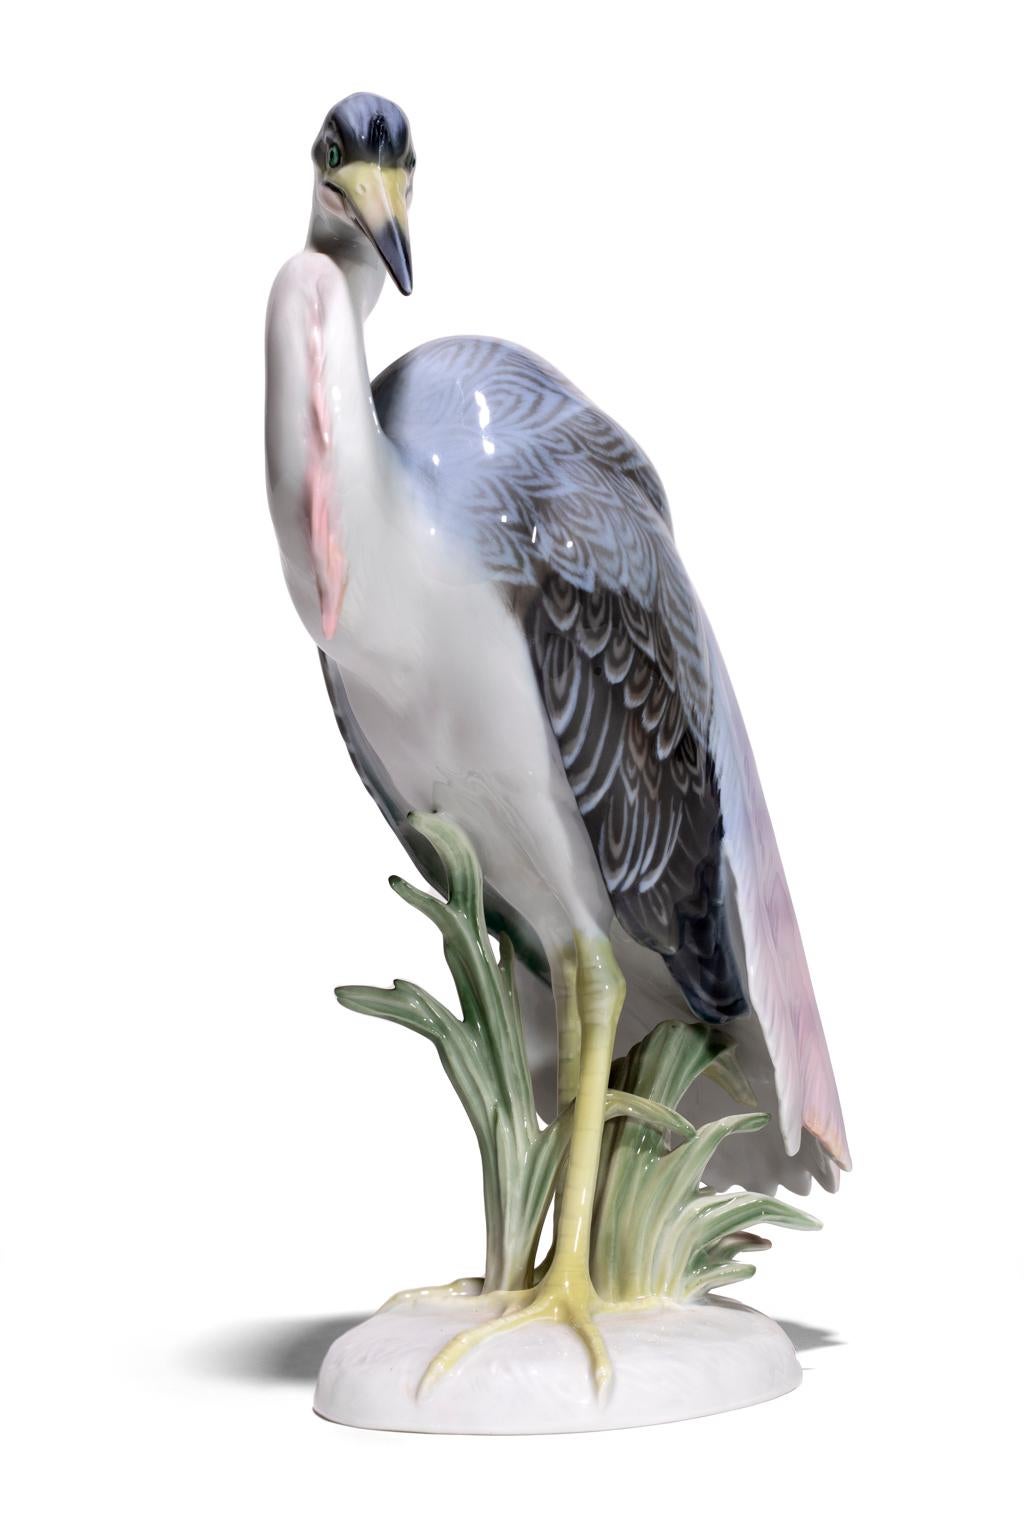 Das exquisite Rosenthal Heron Crane Porzellan im Vintage-Stil ist sorgfältig von Hand in Rosa, Lavendel, Grau und Grün bemalt und hat einen zarten Touch. Seine Pose ist von Würde und Autorität geprägt, und er scheint innezuhalten, während er sich